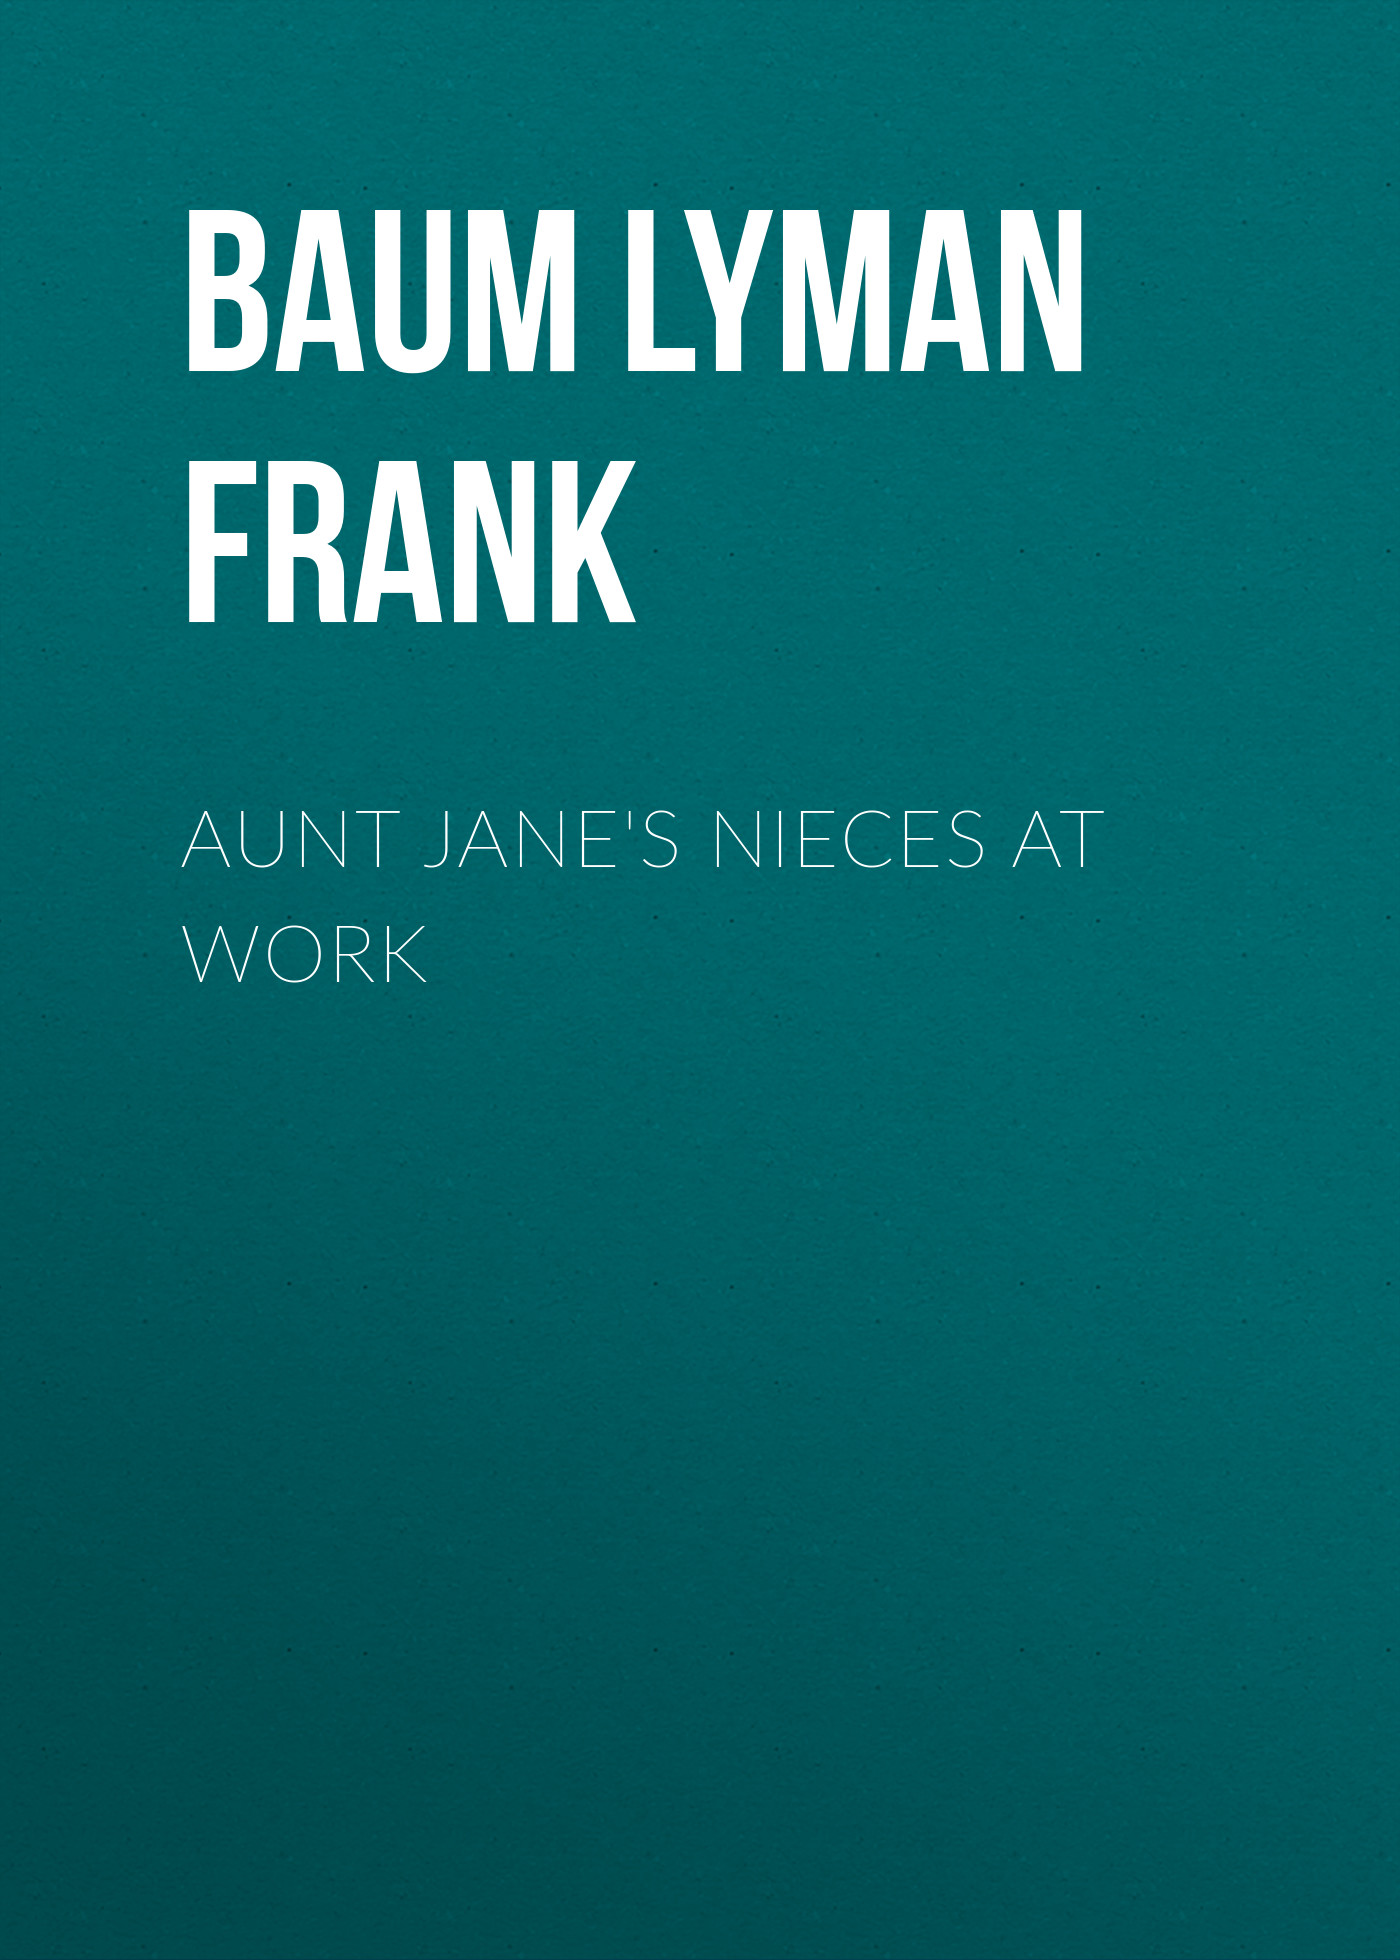 Книга Aunt Jane's Nieces at Work из серии , созданная Lyman Baum, может относится к жанру Зарубежная старинная литература, Зарубежная классика. Стоимость электронной книги Aunt Jane's Nieces at Work с идентификатором 25019075 составляет 0 руб.